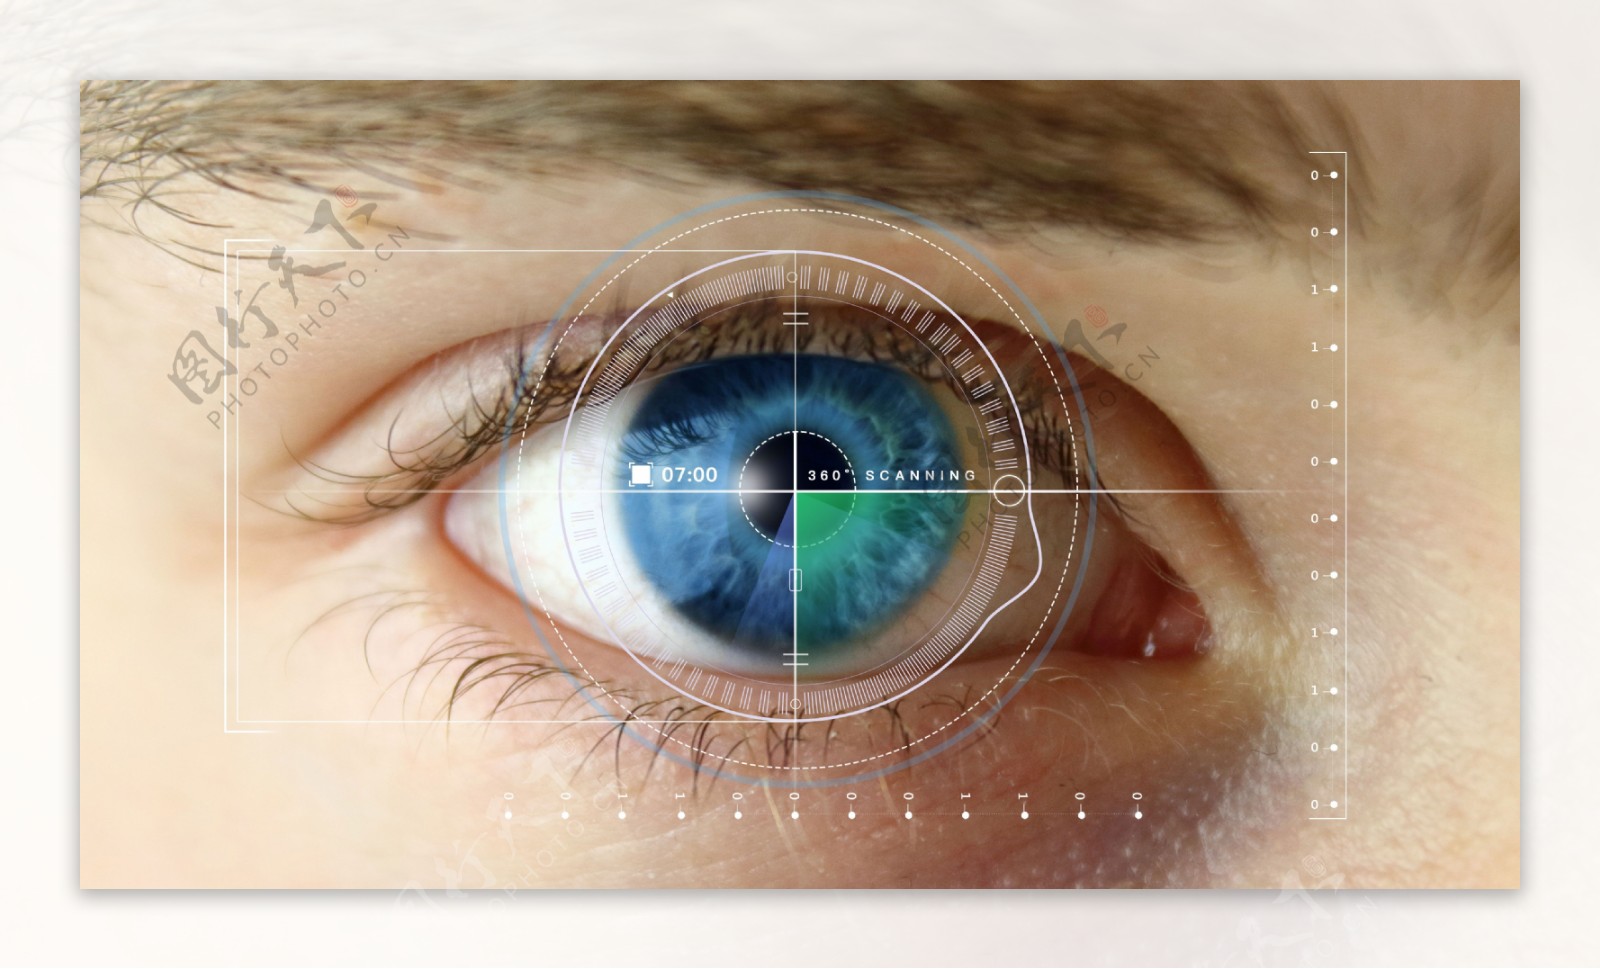 瞳孔信息认证技术